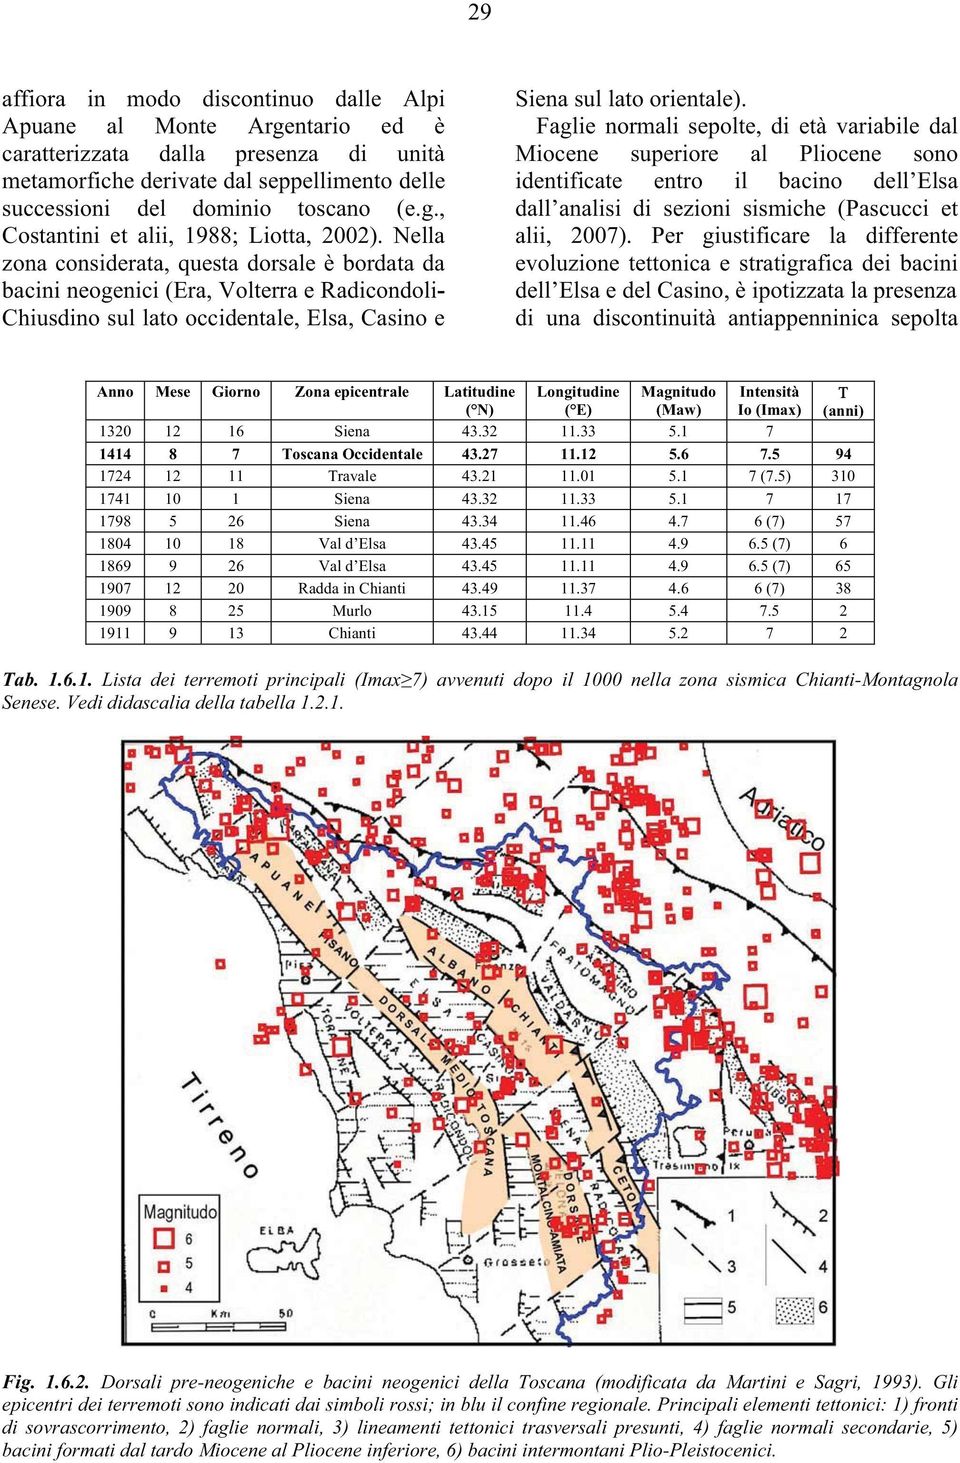 Faglie normali sepolte, di età variabile dal Miocene superiore al Pliocene sono identificate entro il bacino dell Elsa dall analisi di sezioni sismiche (Pascucci et alii, 2007).